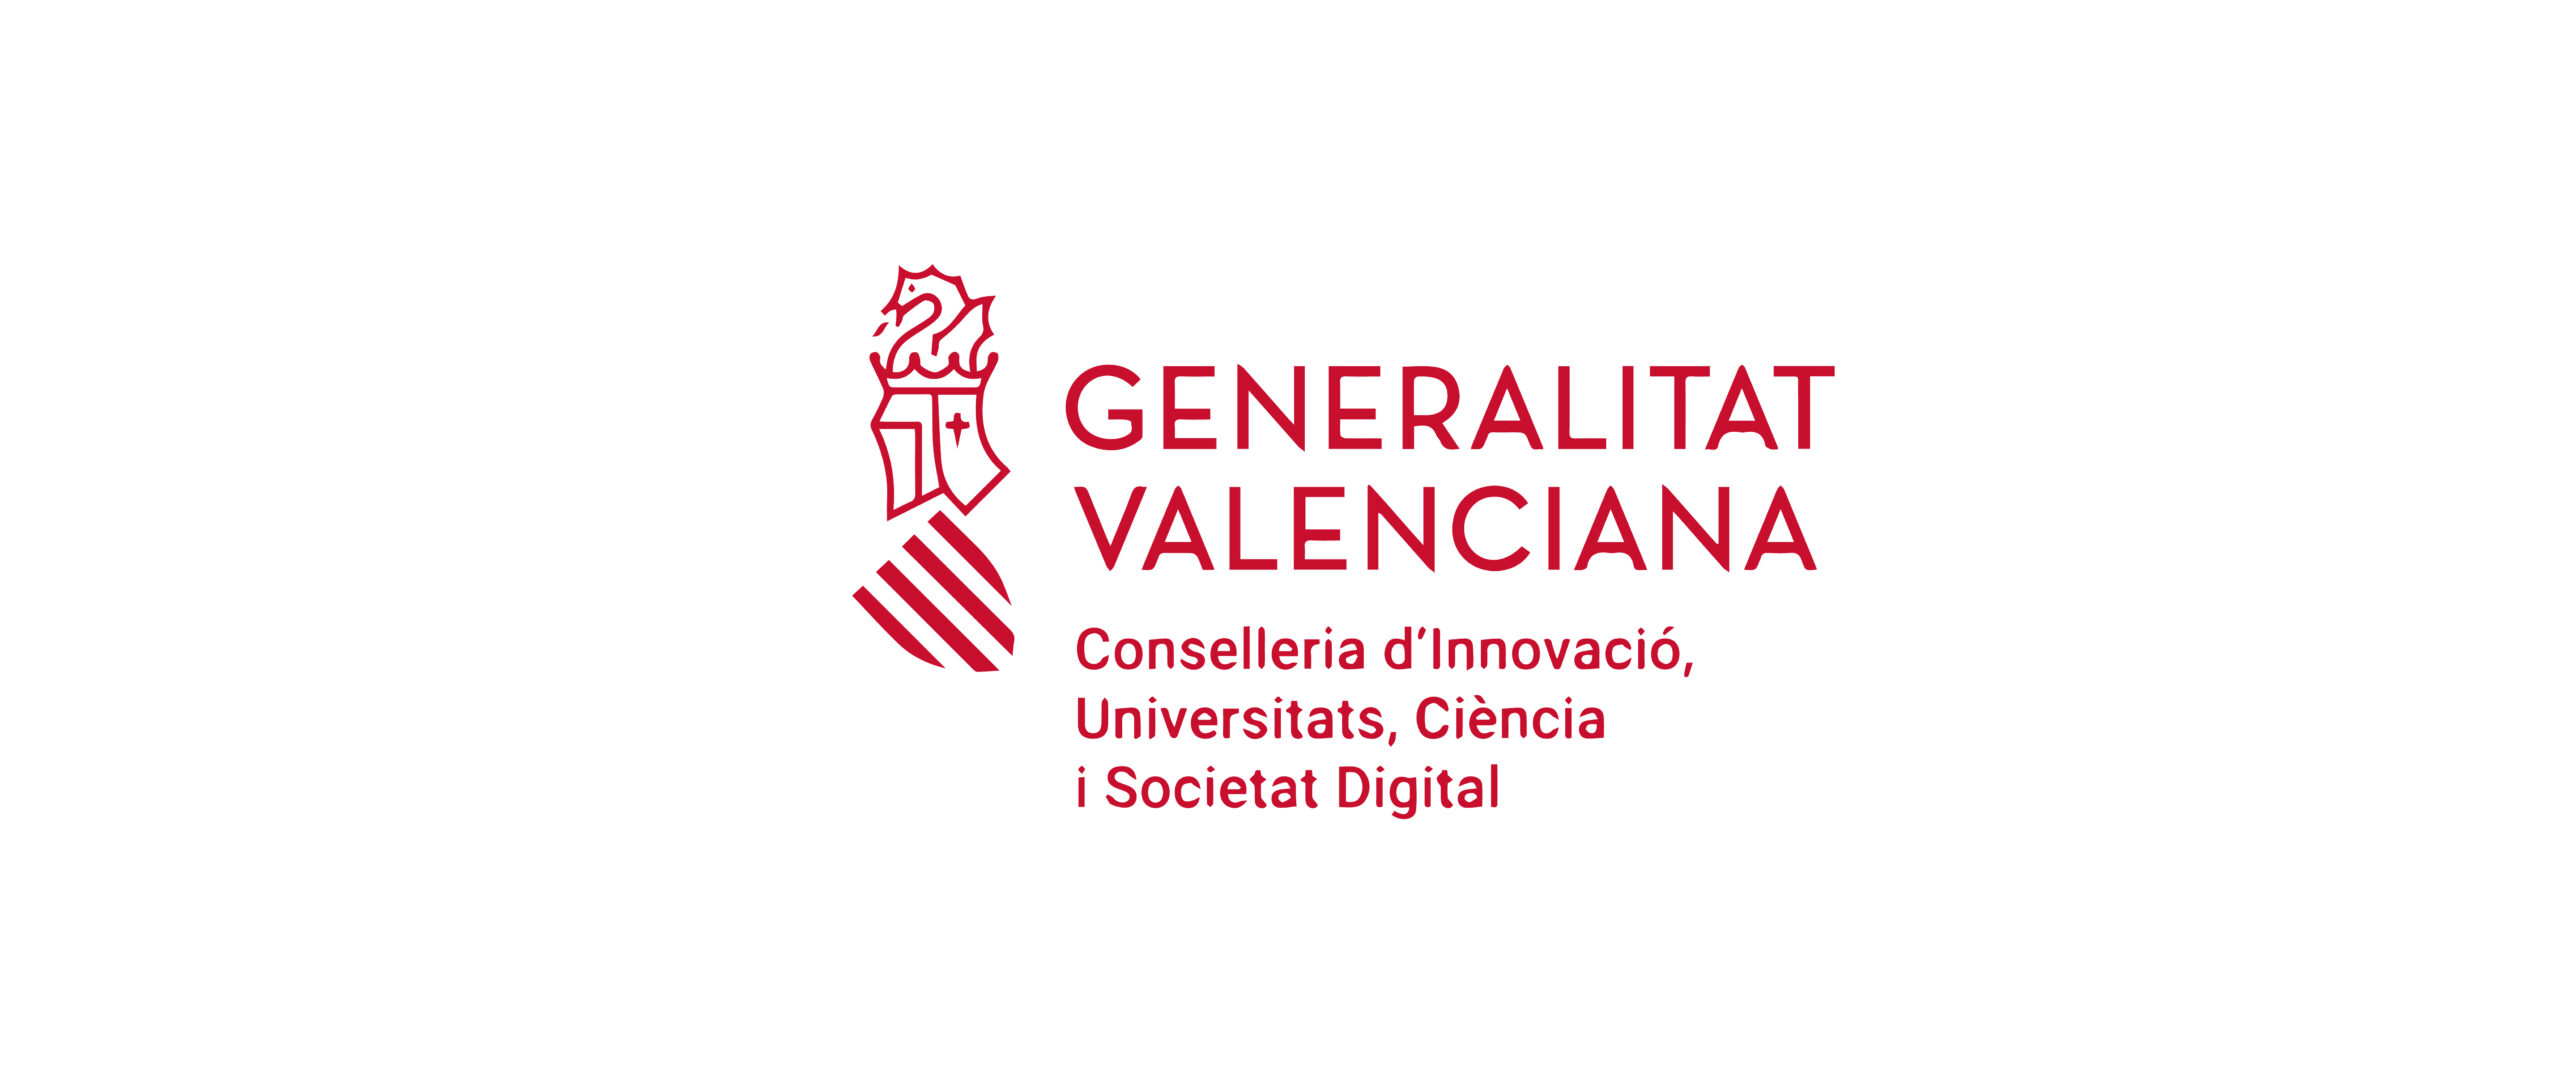 GVA Logo Conselleria d'Innovació, Universitats, Ciència i Societat Digital